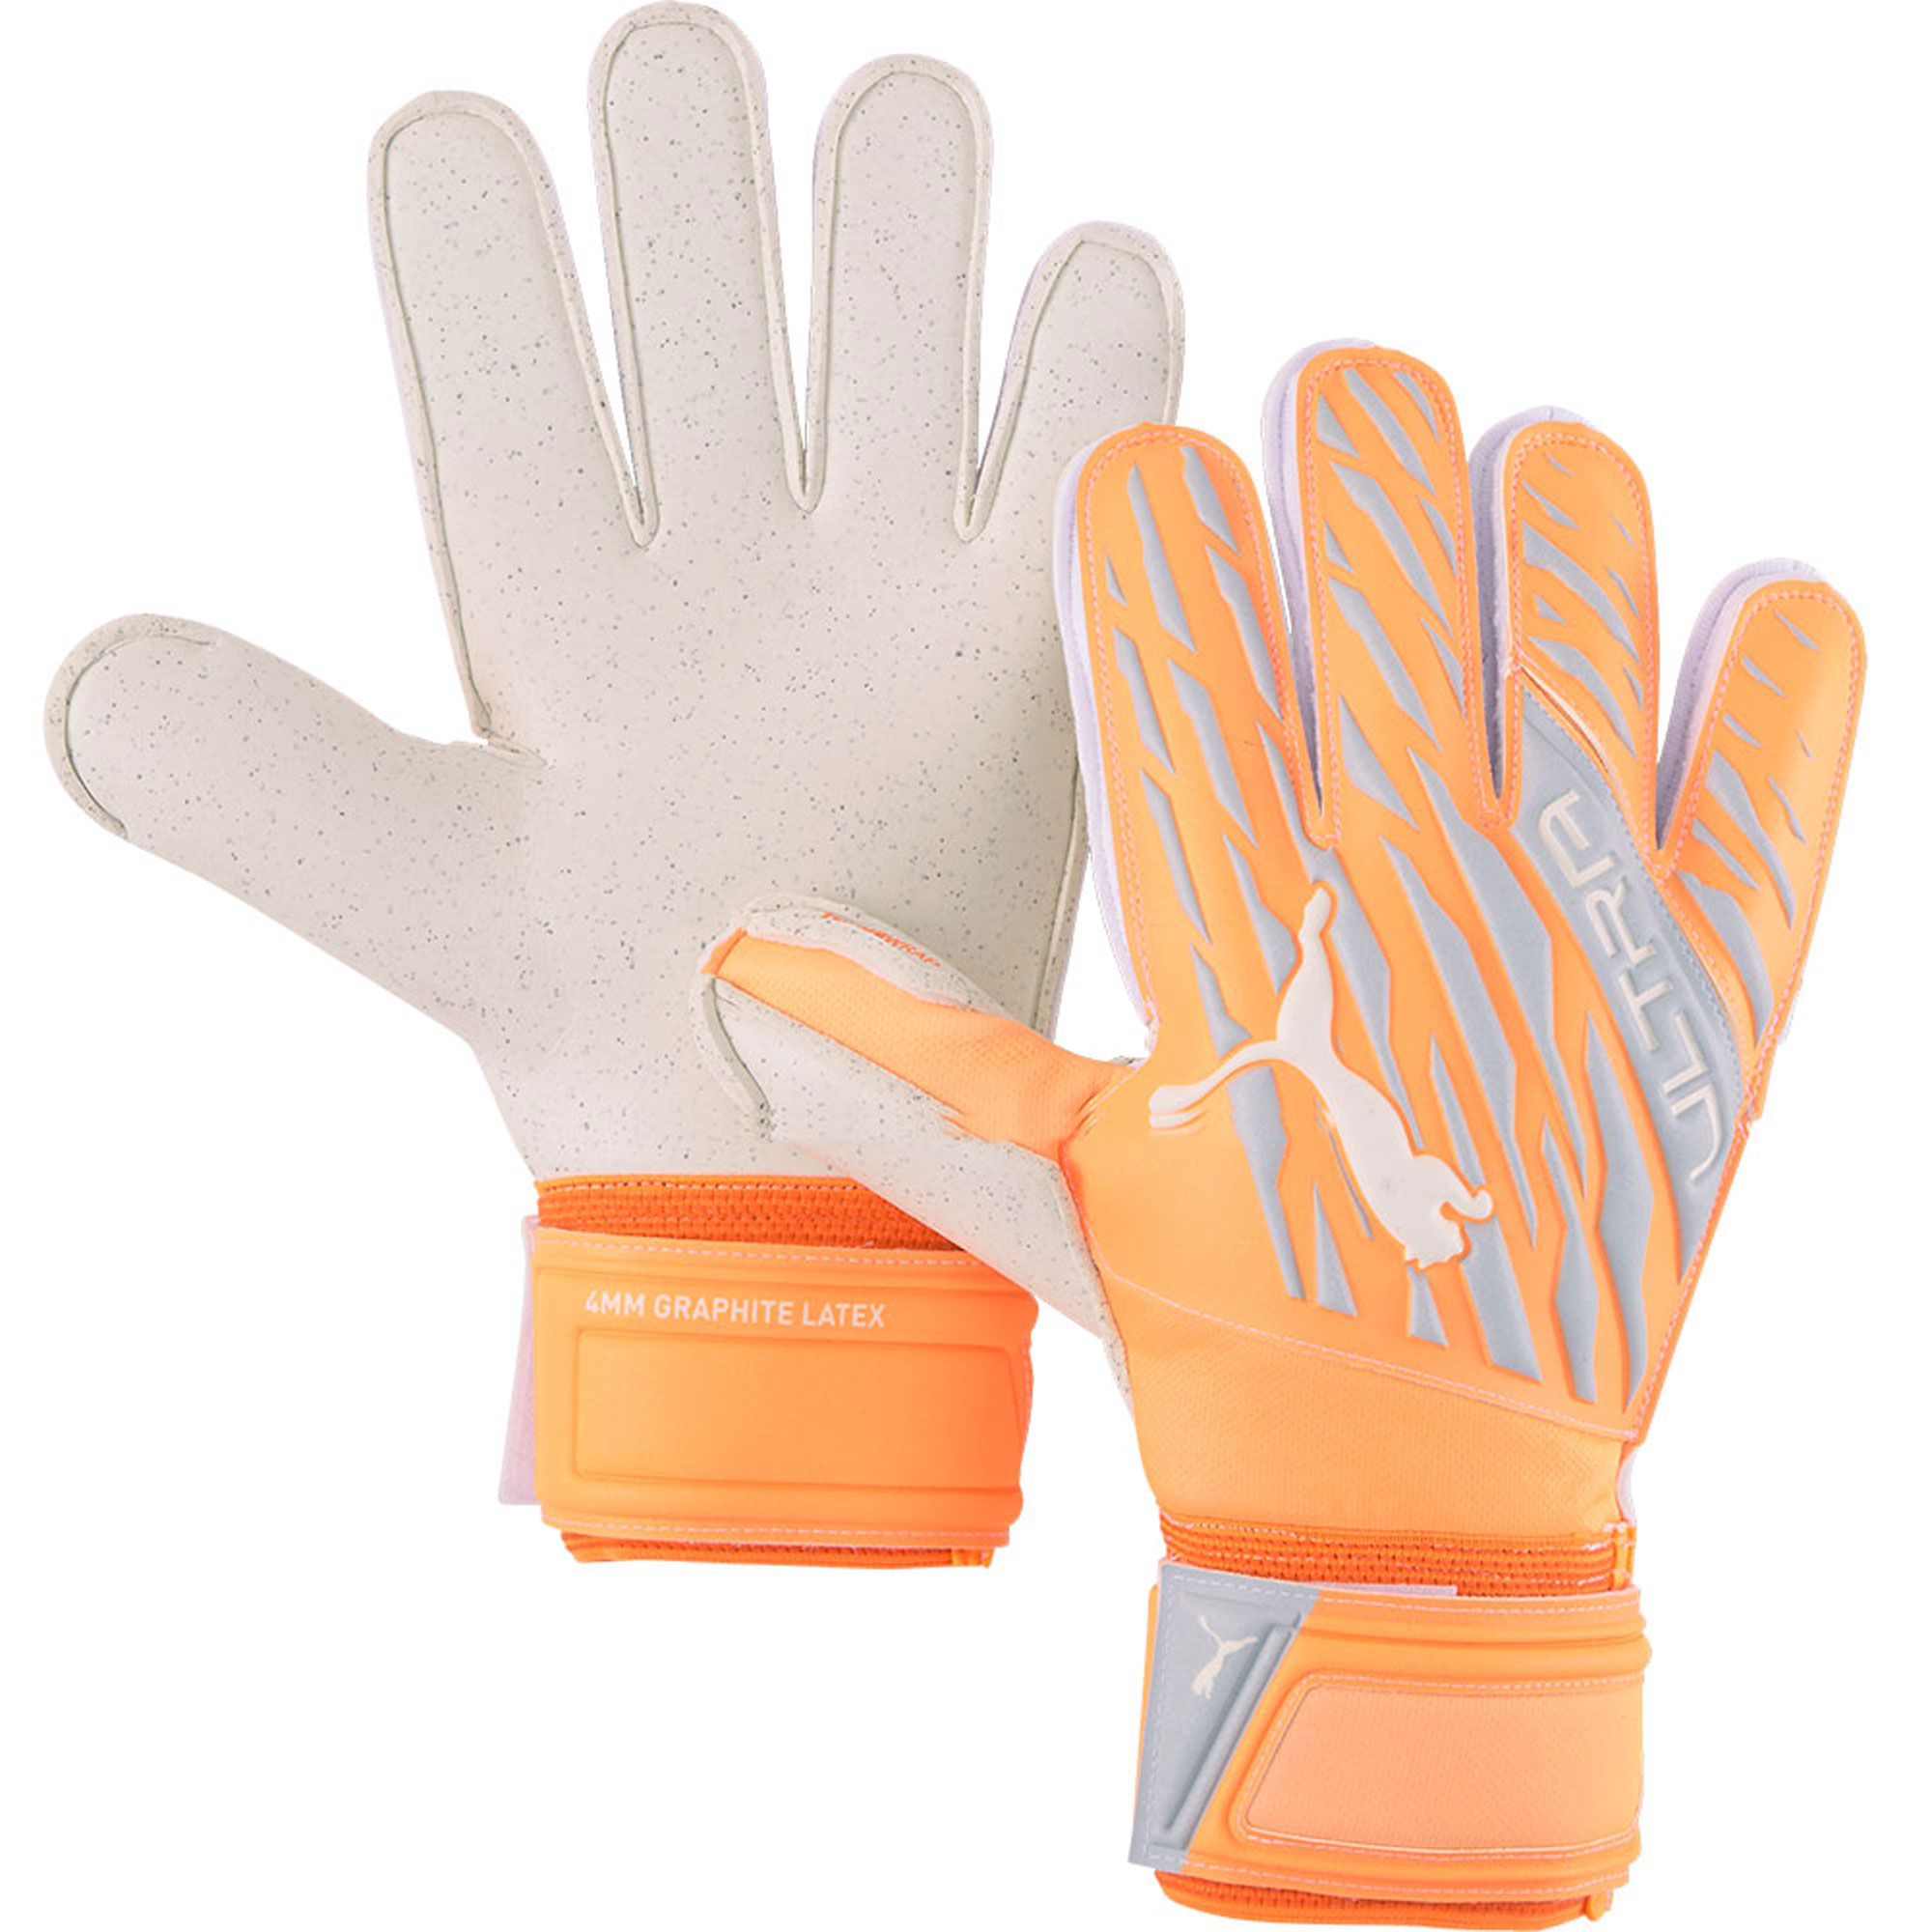 stefanssoccer.com:Puma Ultra Protect 2 RC Goalkeeper Gloves Orange